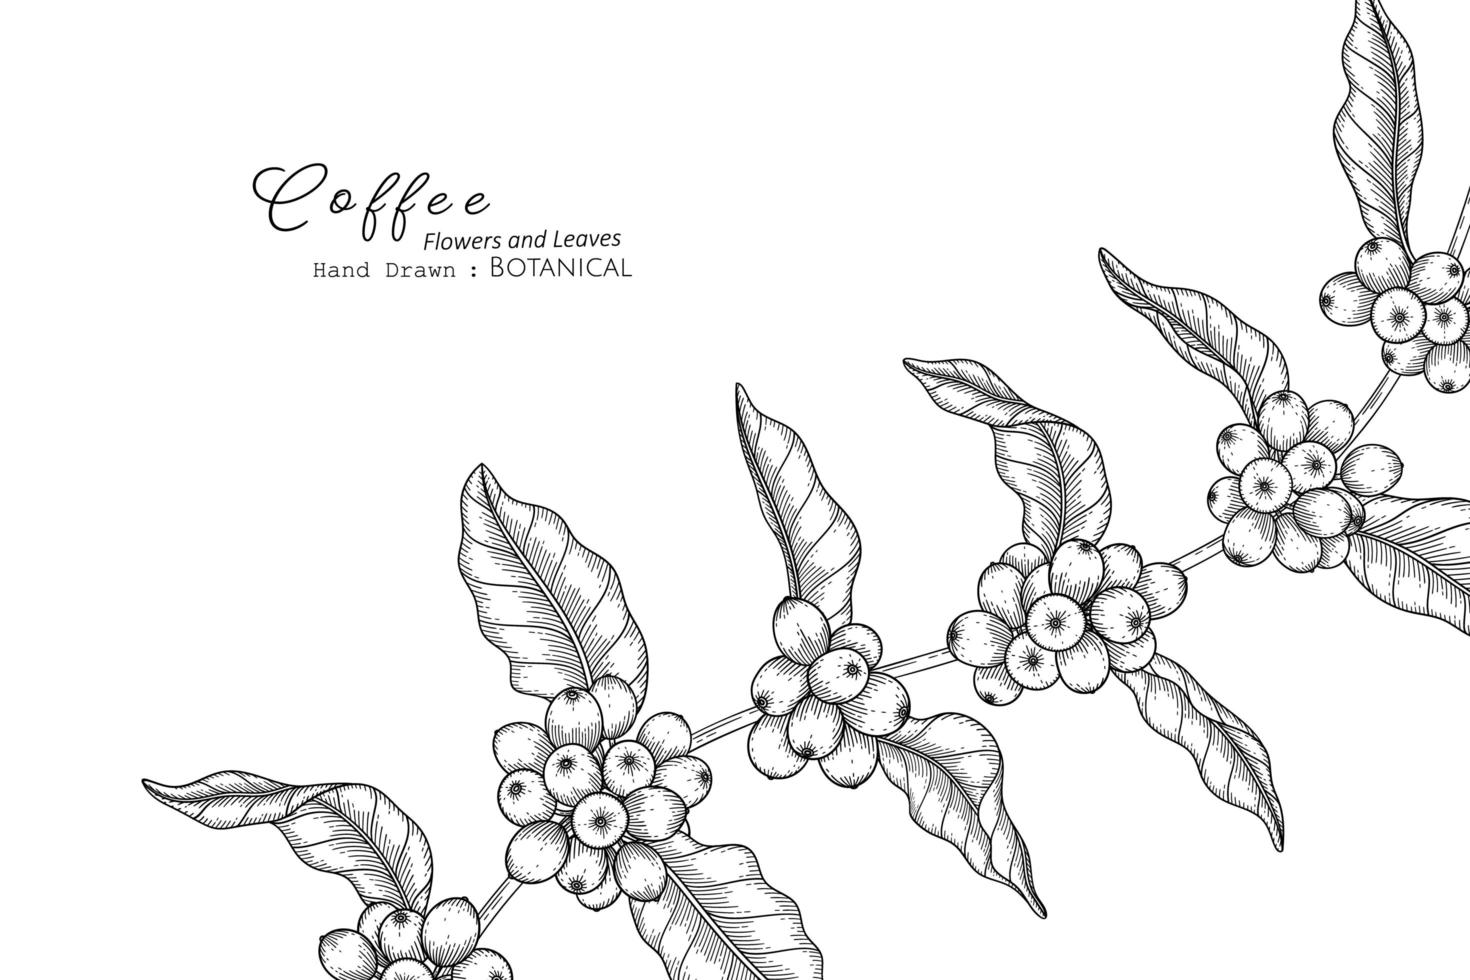 Kaffeeblume und Blatt handgezeichnete botanische Illustration mit Strichzeichnungen vektor